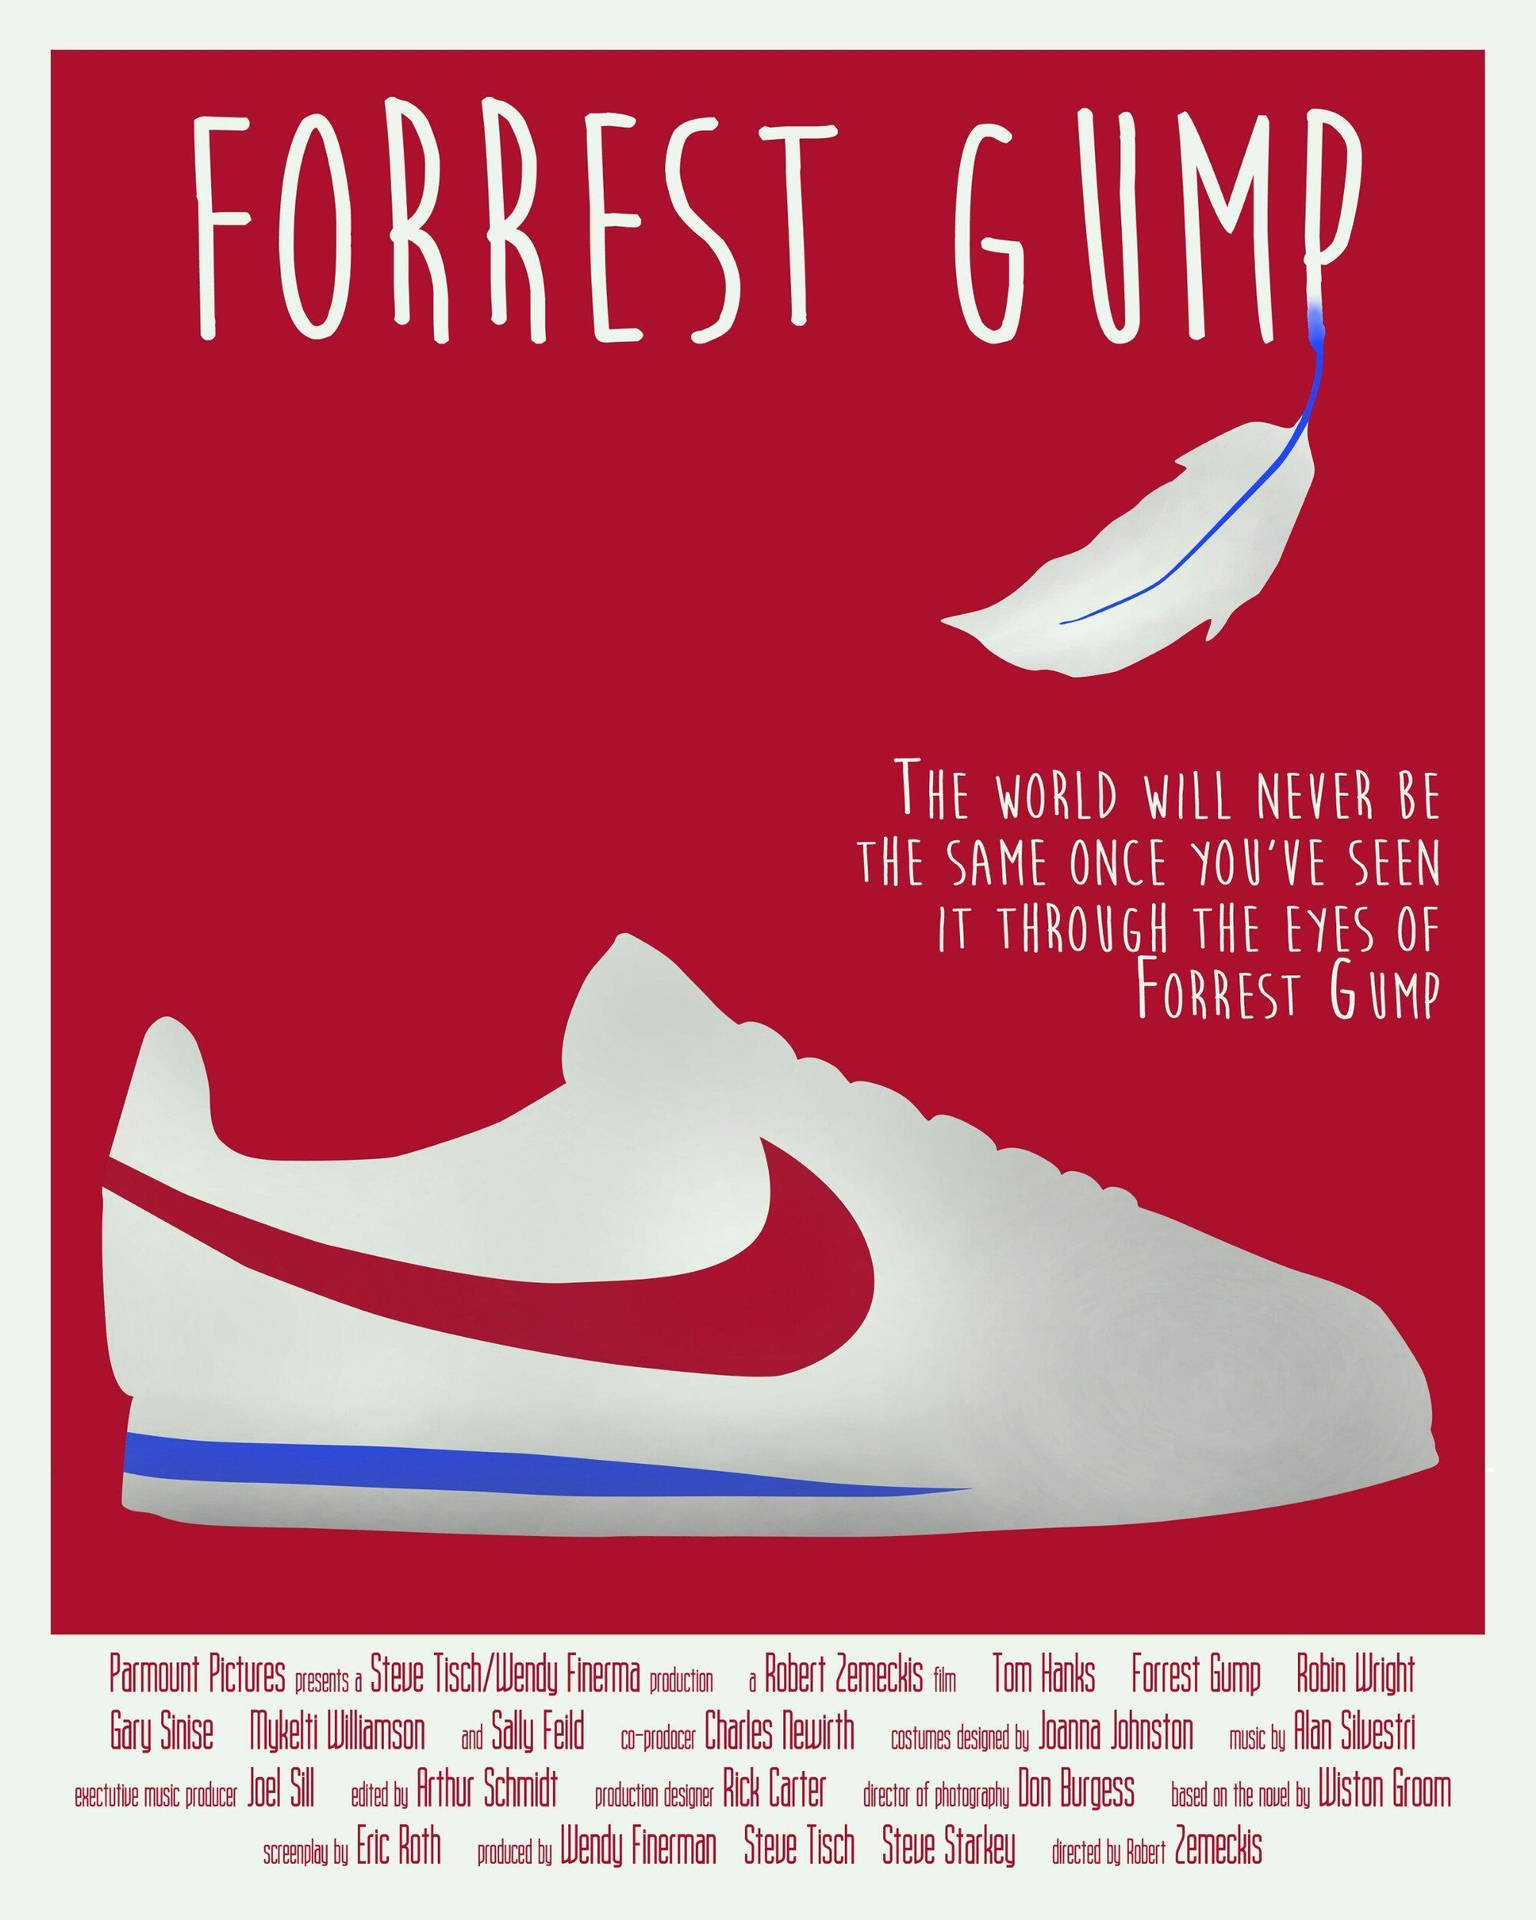 Forrest Gump Iconic Nike Cortez Shoe Background